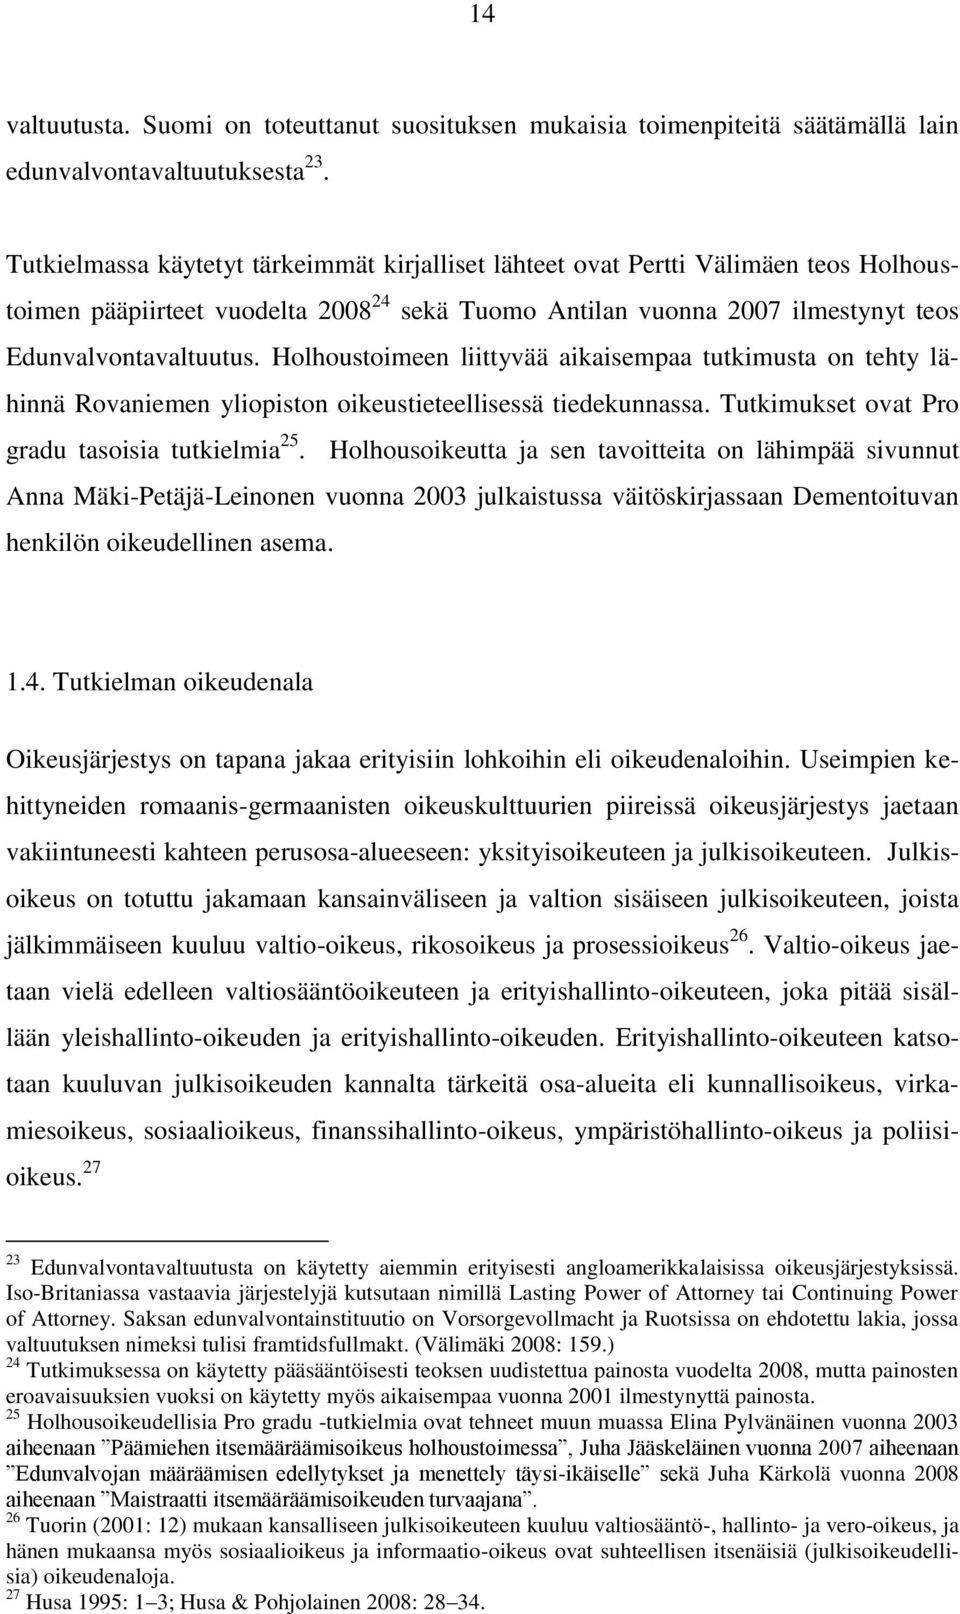 Holhoustoimeen liittyvää aikaisempaa tutkimusta on tehty lähinnä Rovaniemen yliopiston oikeustieteellisessä tiedekunnassa. Tutkimukset ovat Pro gradu tasoisia tutkielmia 25.